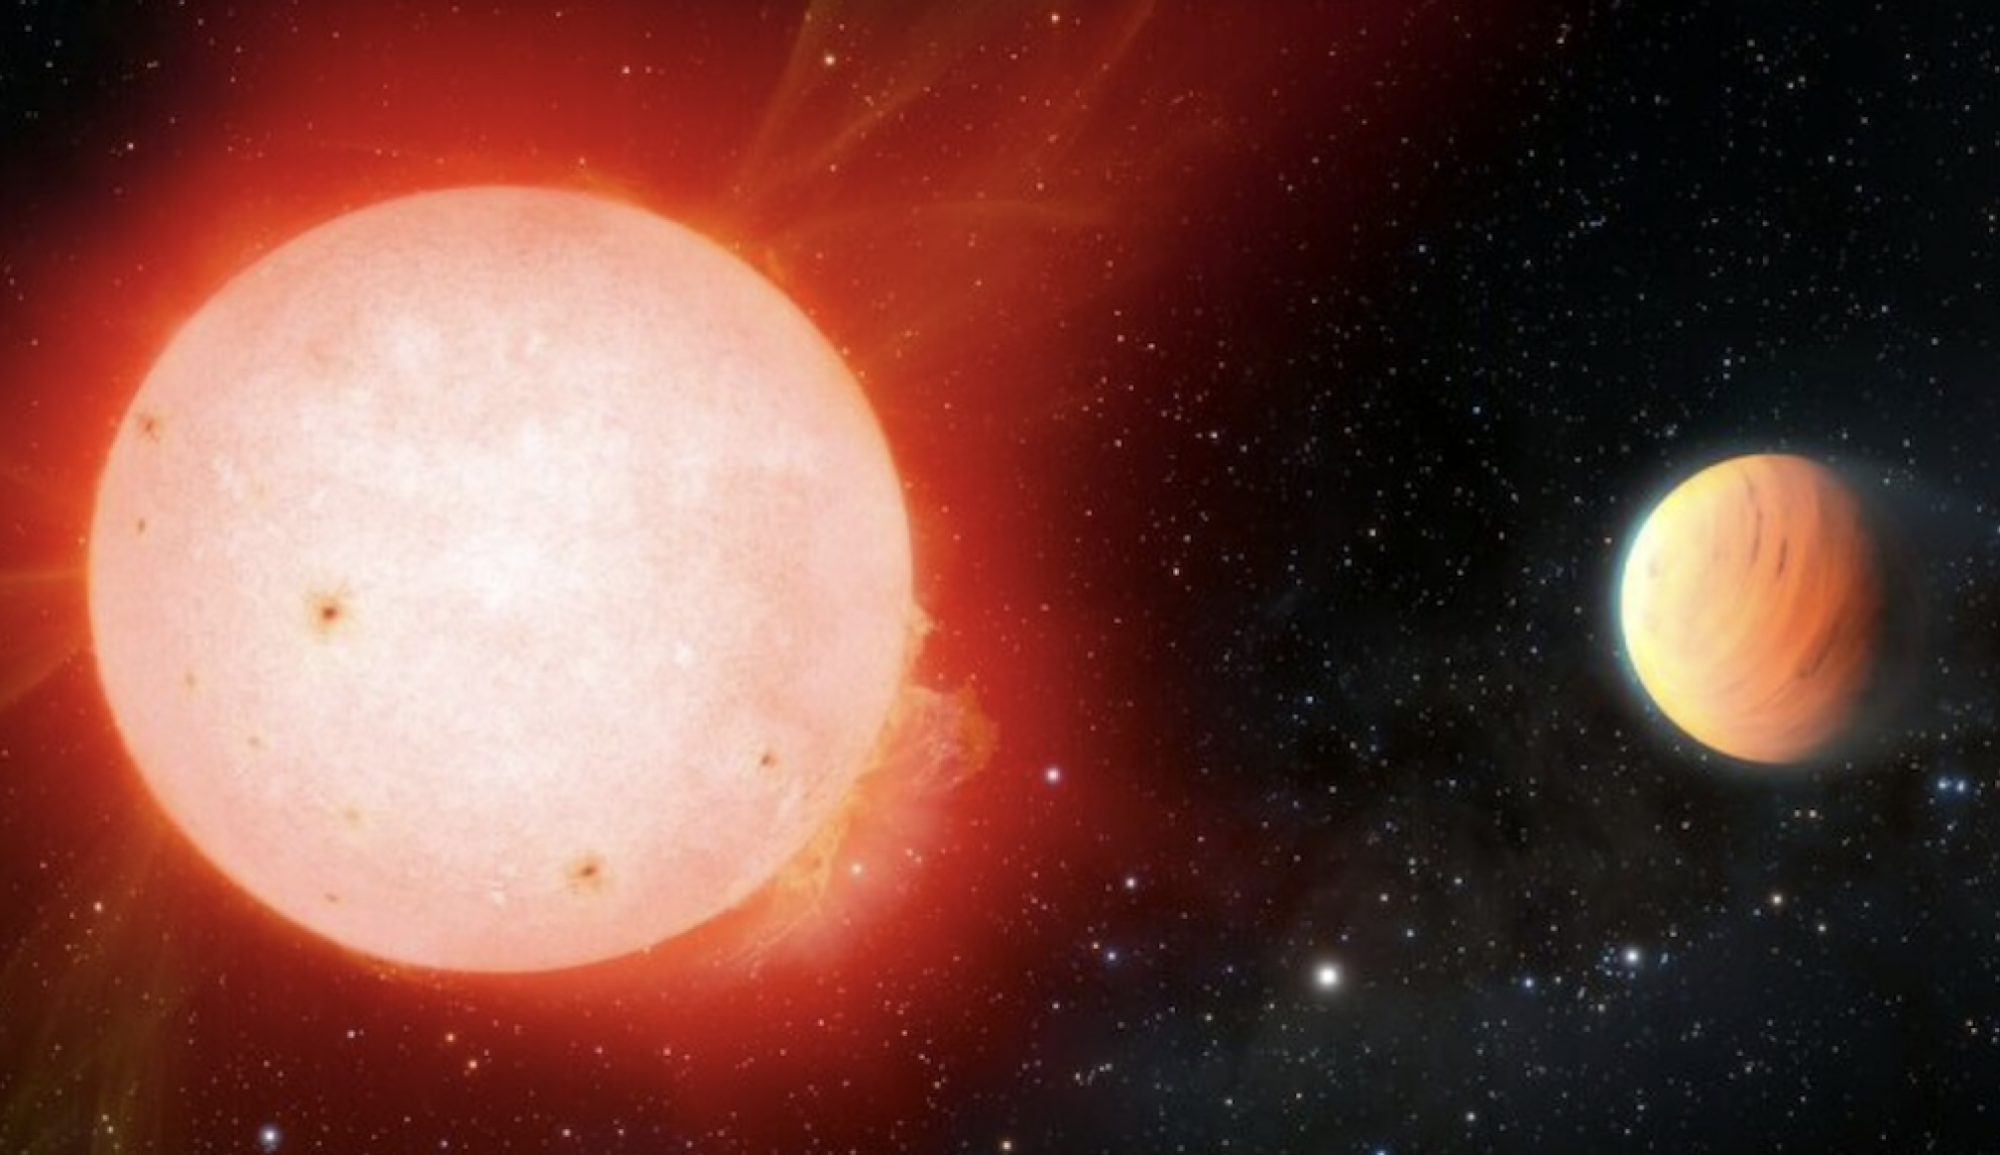 Vue d'artiste d'une étoile naine rouge en orbite autour d'une exoplanète ressemblant à une guimauve (à droite)